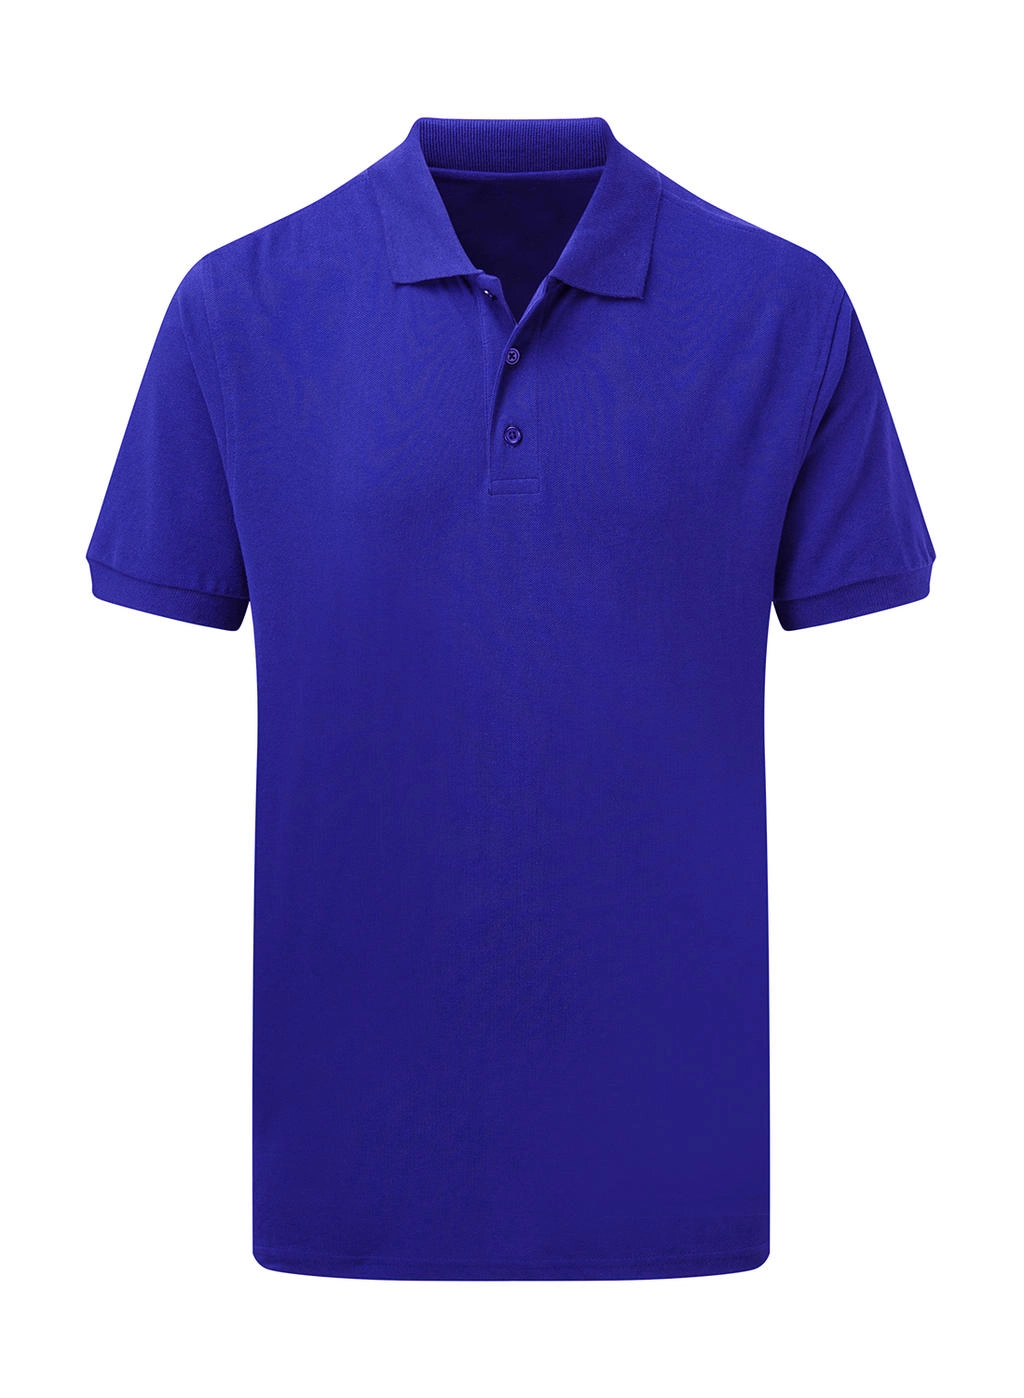 Cotton Polo Men zum Besticken und Bedrucken in der Farbe Royal Blue mit Ihren Logo, Schriftzug oder Motiv.